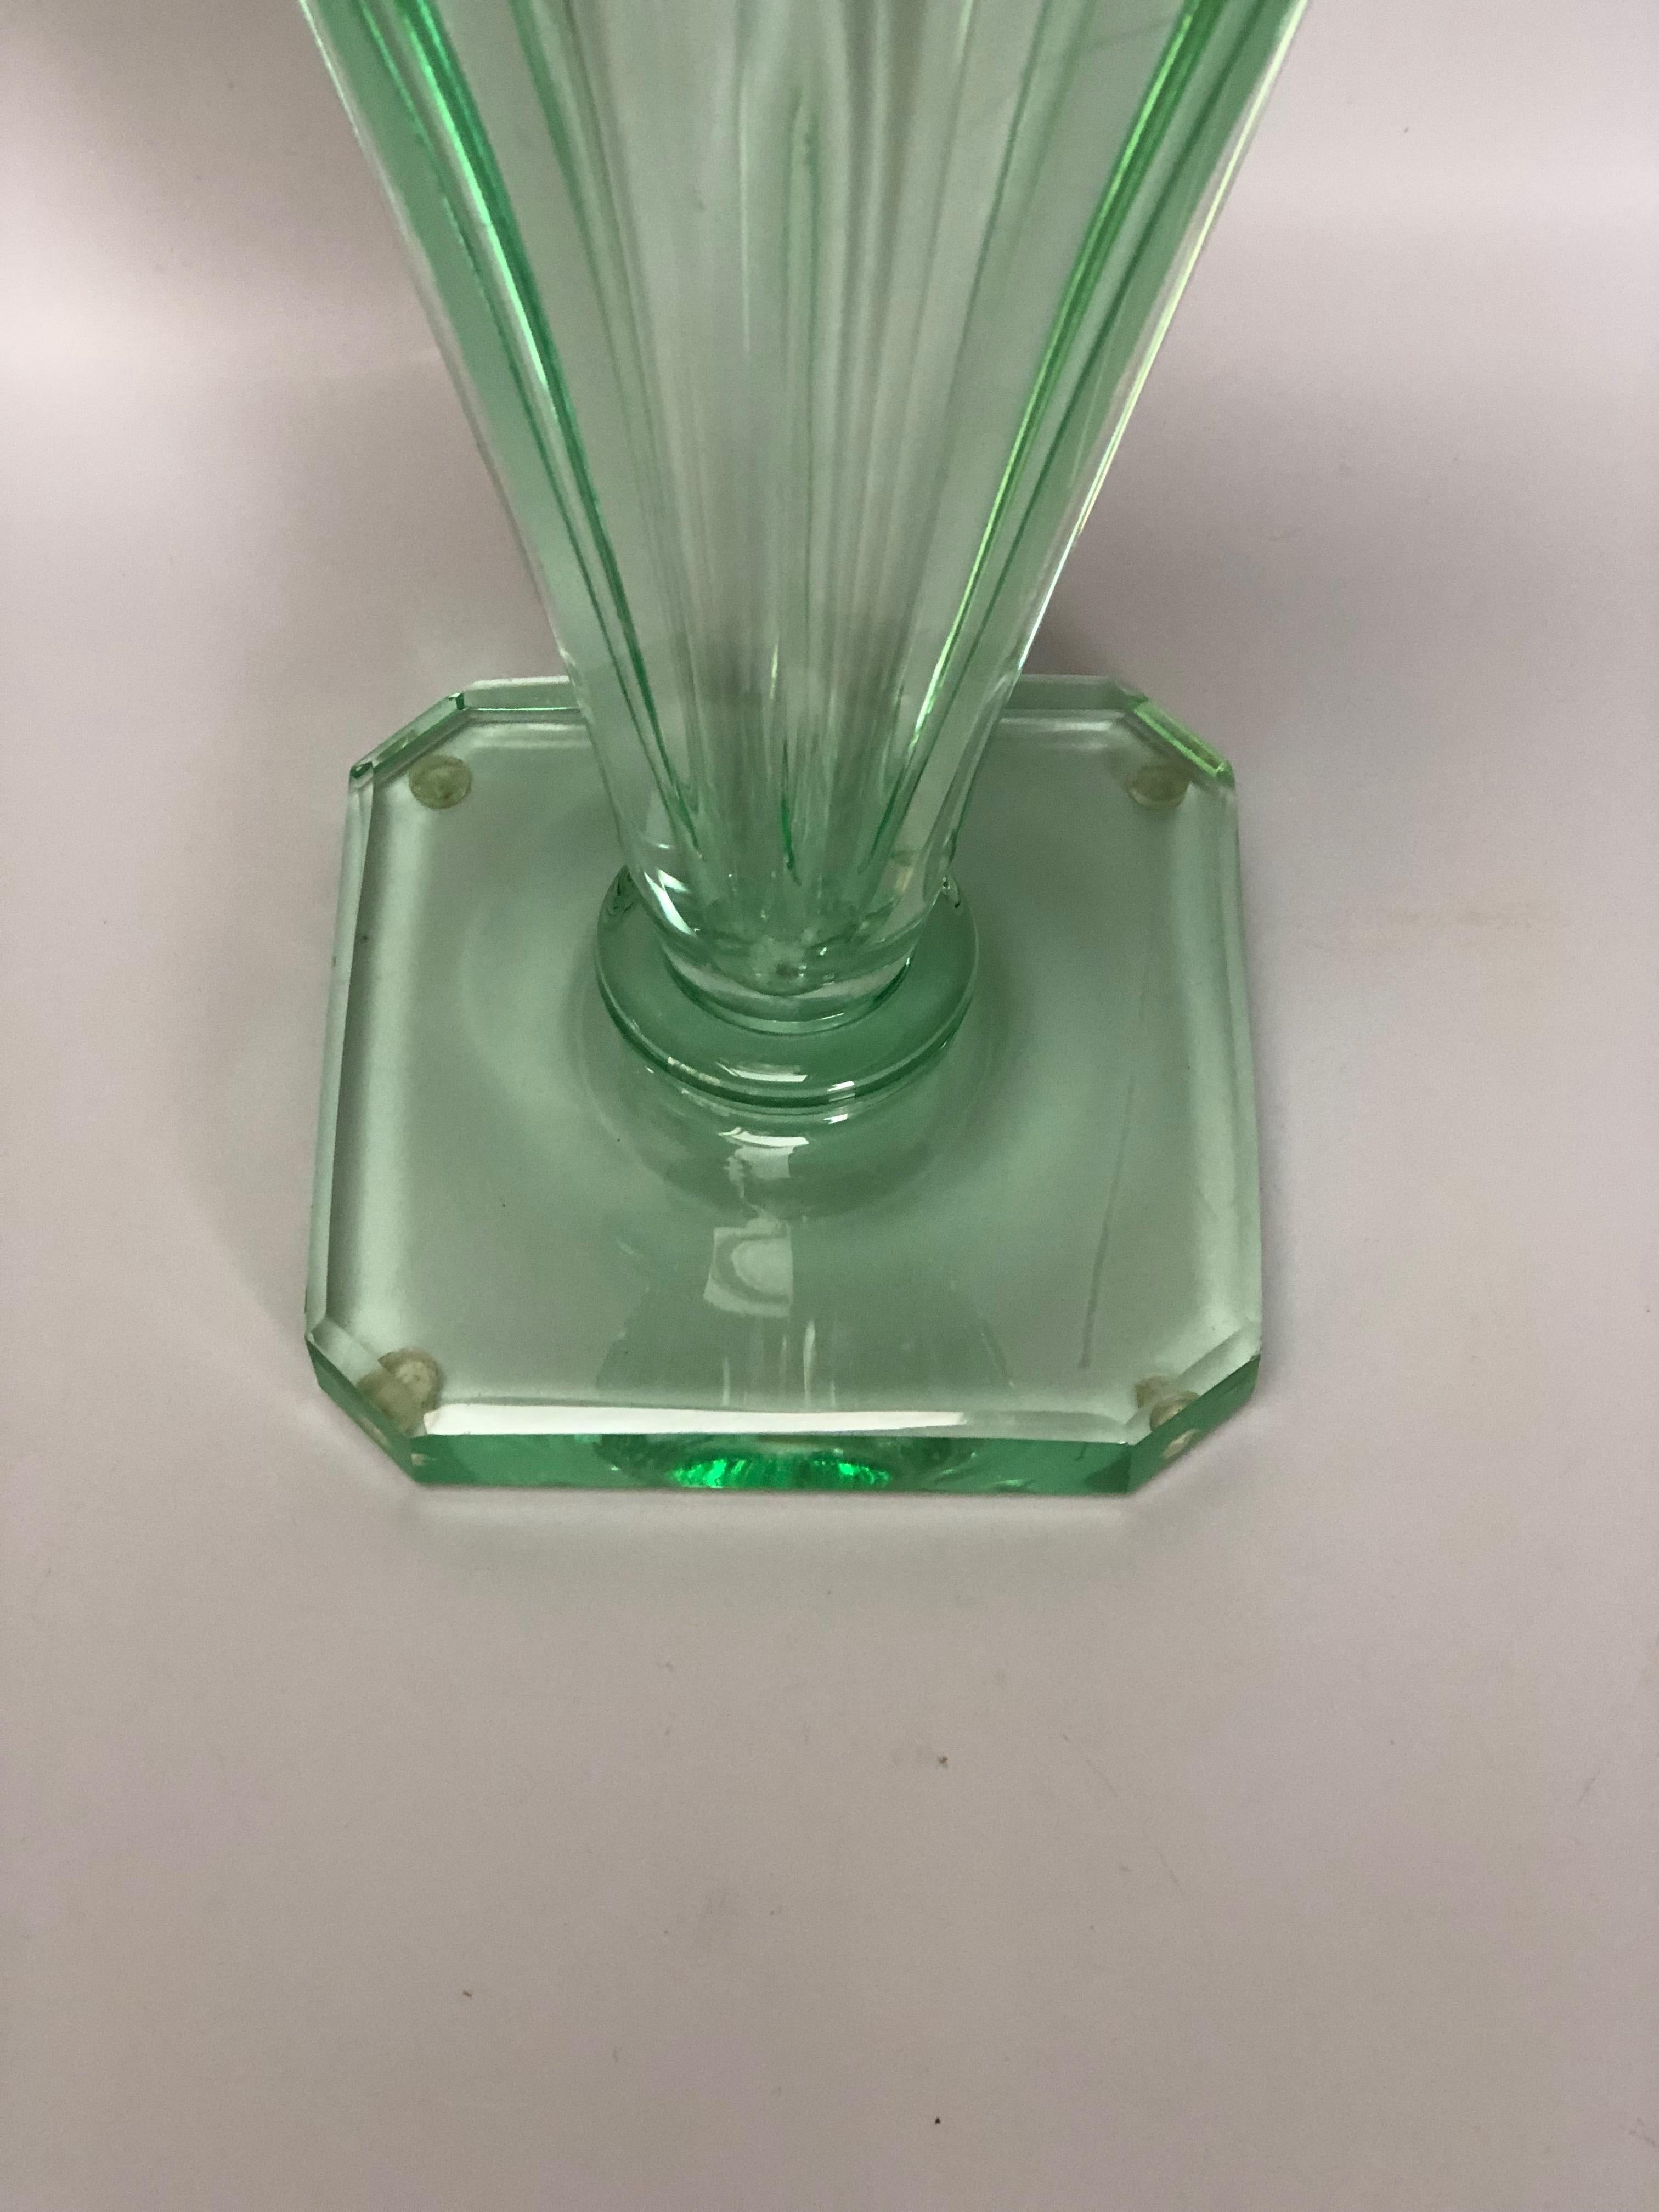 Vase conique Art déco circa 1930 de couleur verte.
Signé Daum Nancy France. En parfait état.
Noter les micro rayures à l'intérieur

Hauteur : 27,3 cm
Diamètre du col : 14,5 cm
Base : 11,3cm x 11,3cm
Poids : 2.6 kg

Daum (établissement français créé